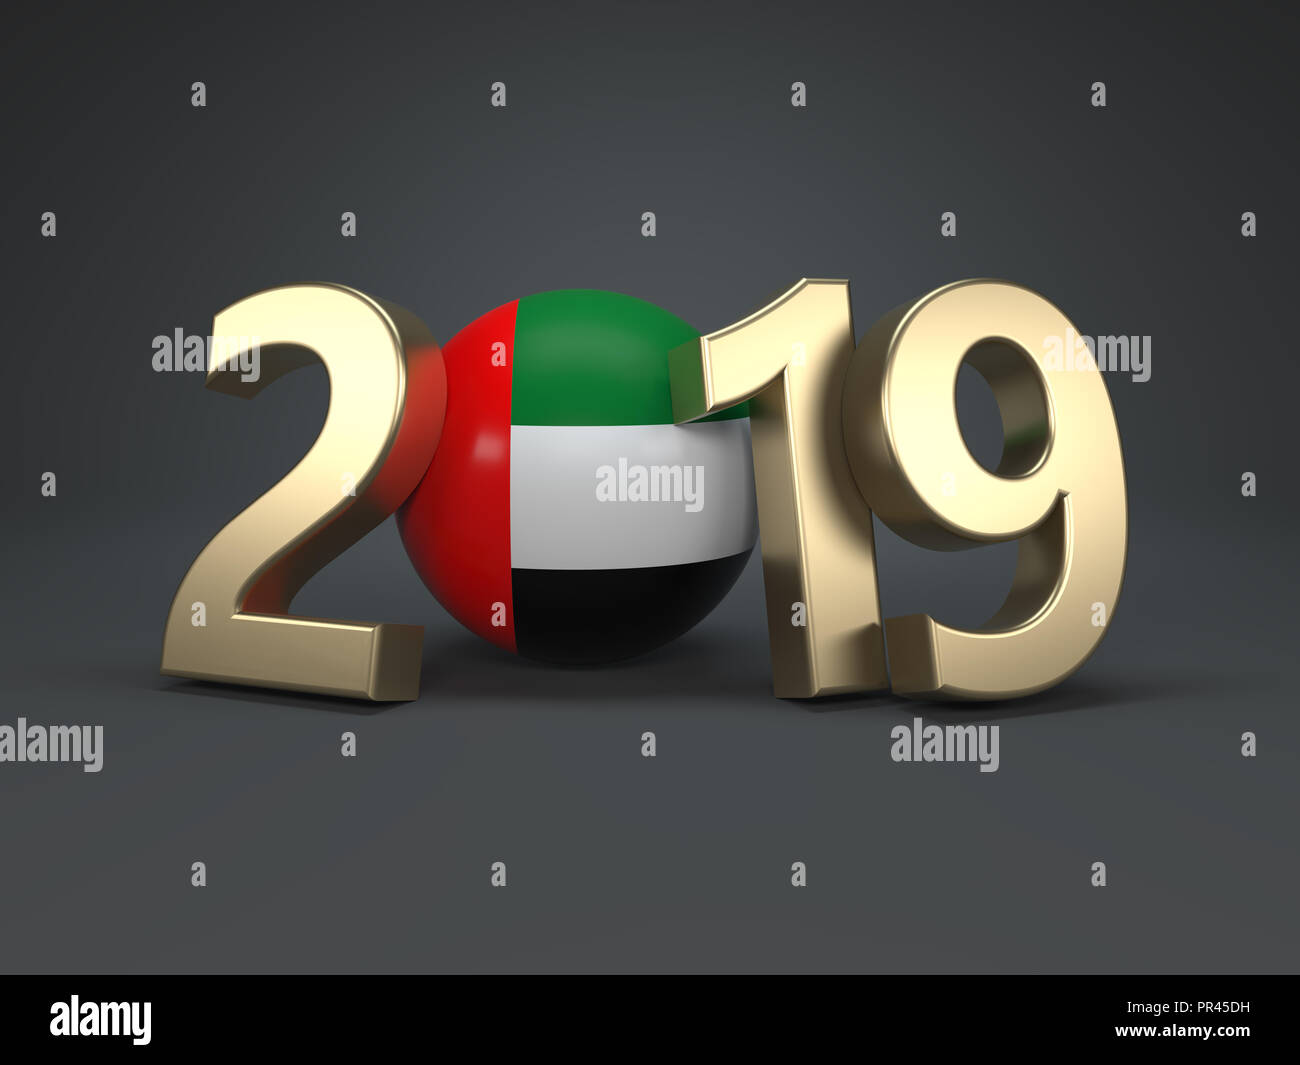 Año nuevo 2019 Diseño creativo concepto con bandera - la imagen presentada en 3D. Foto de stock